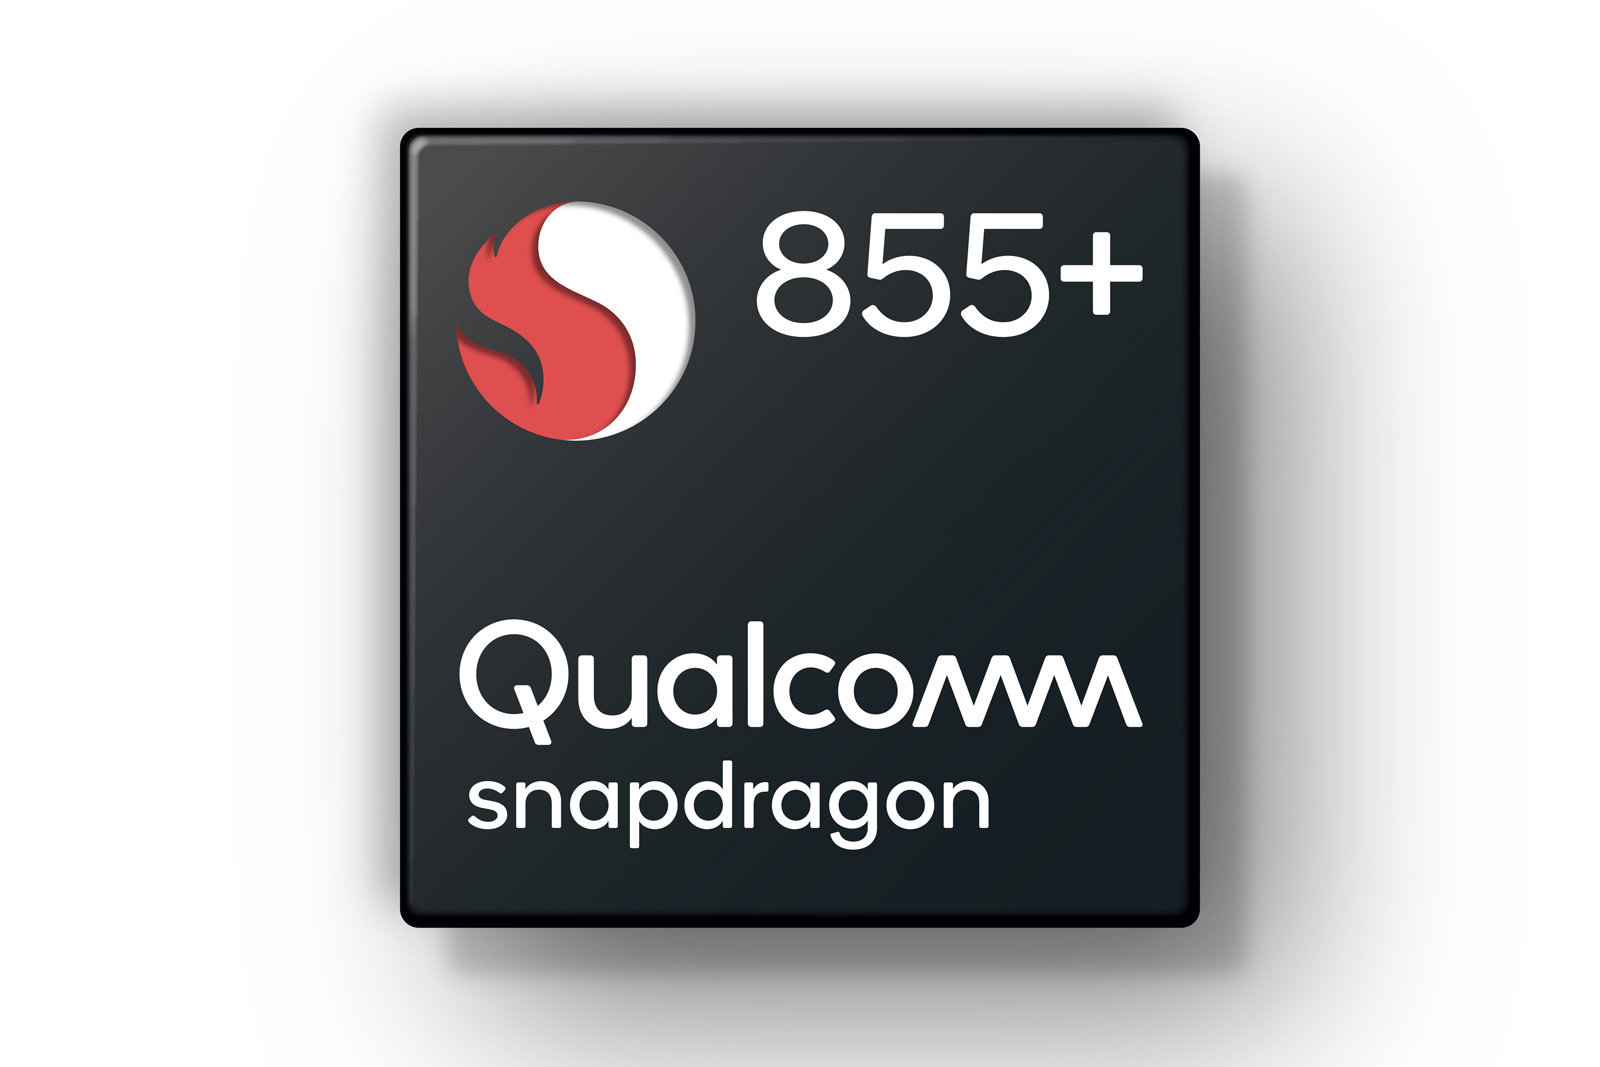 Tuần này có gì: Qualcomm Snapdragon 855+, Sony A7R IV, ViewSonic X10-4K, dải sản phẩm AMD,...